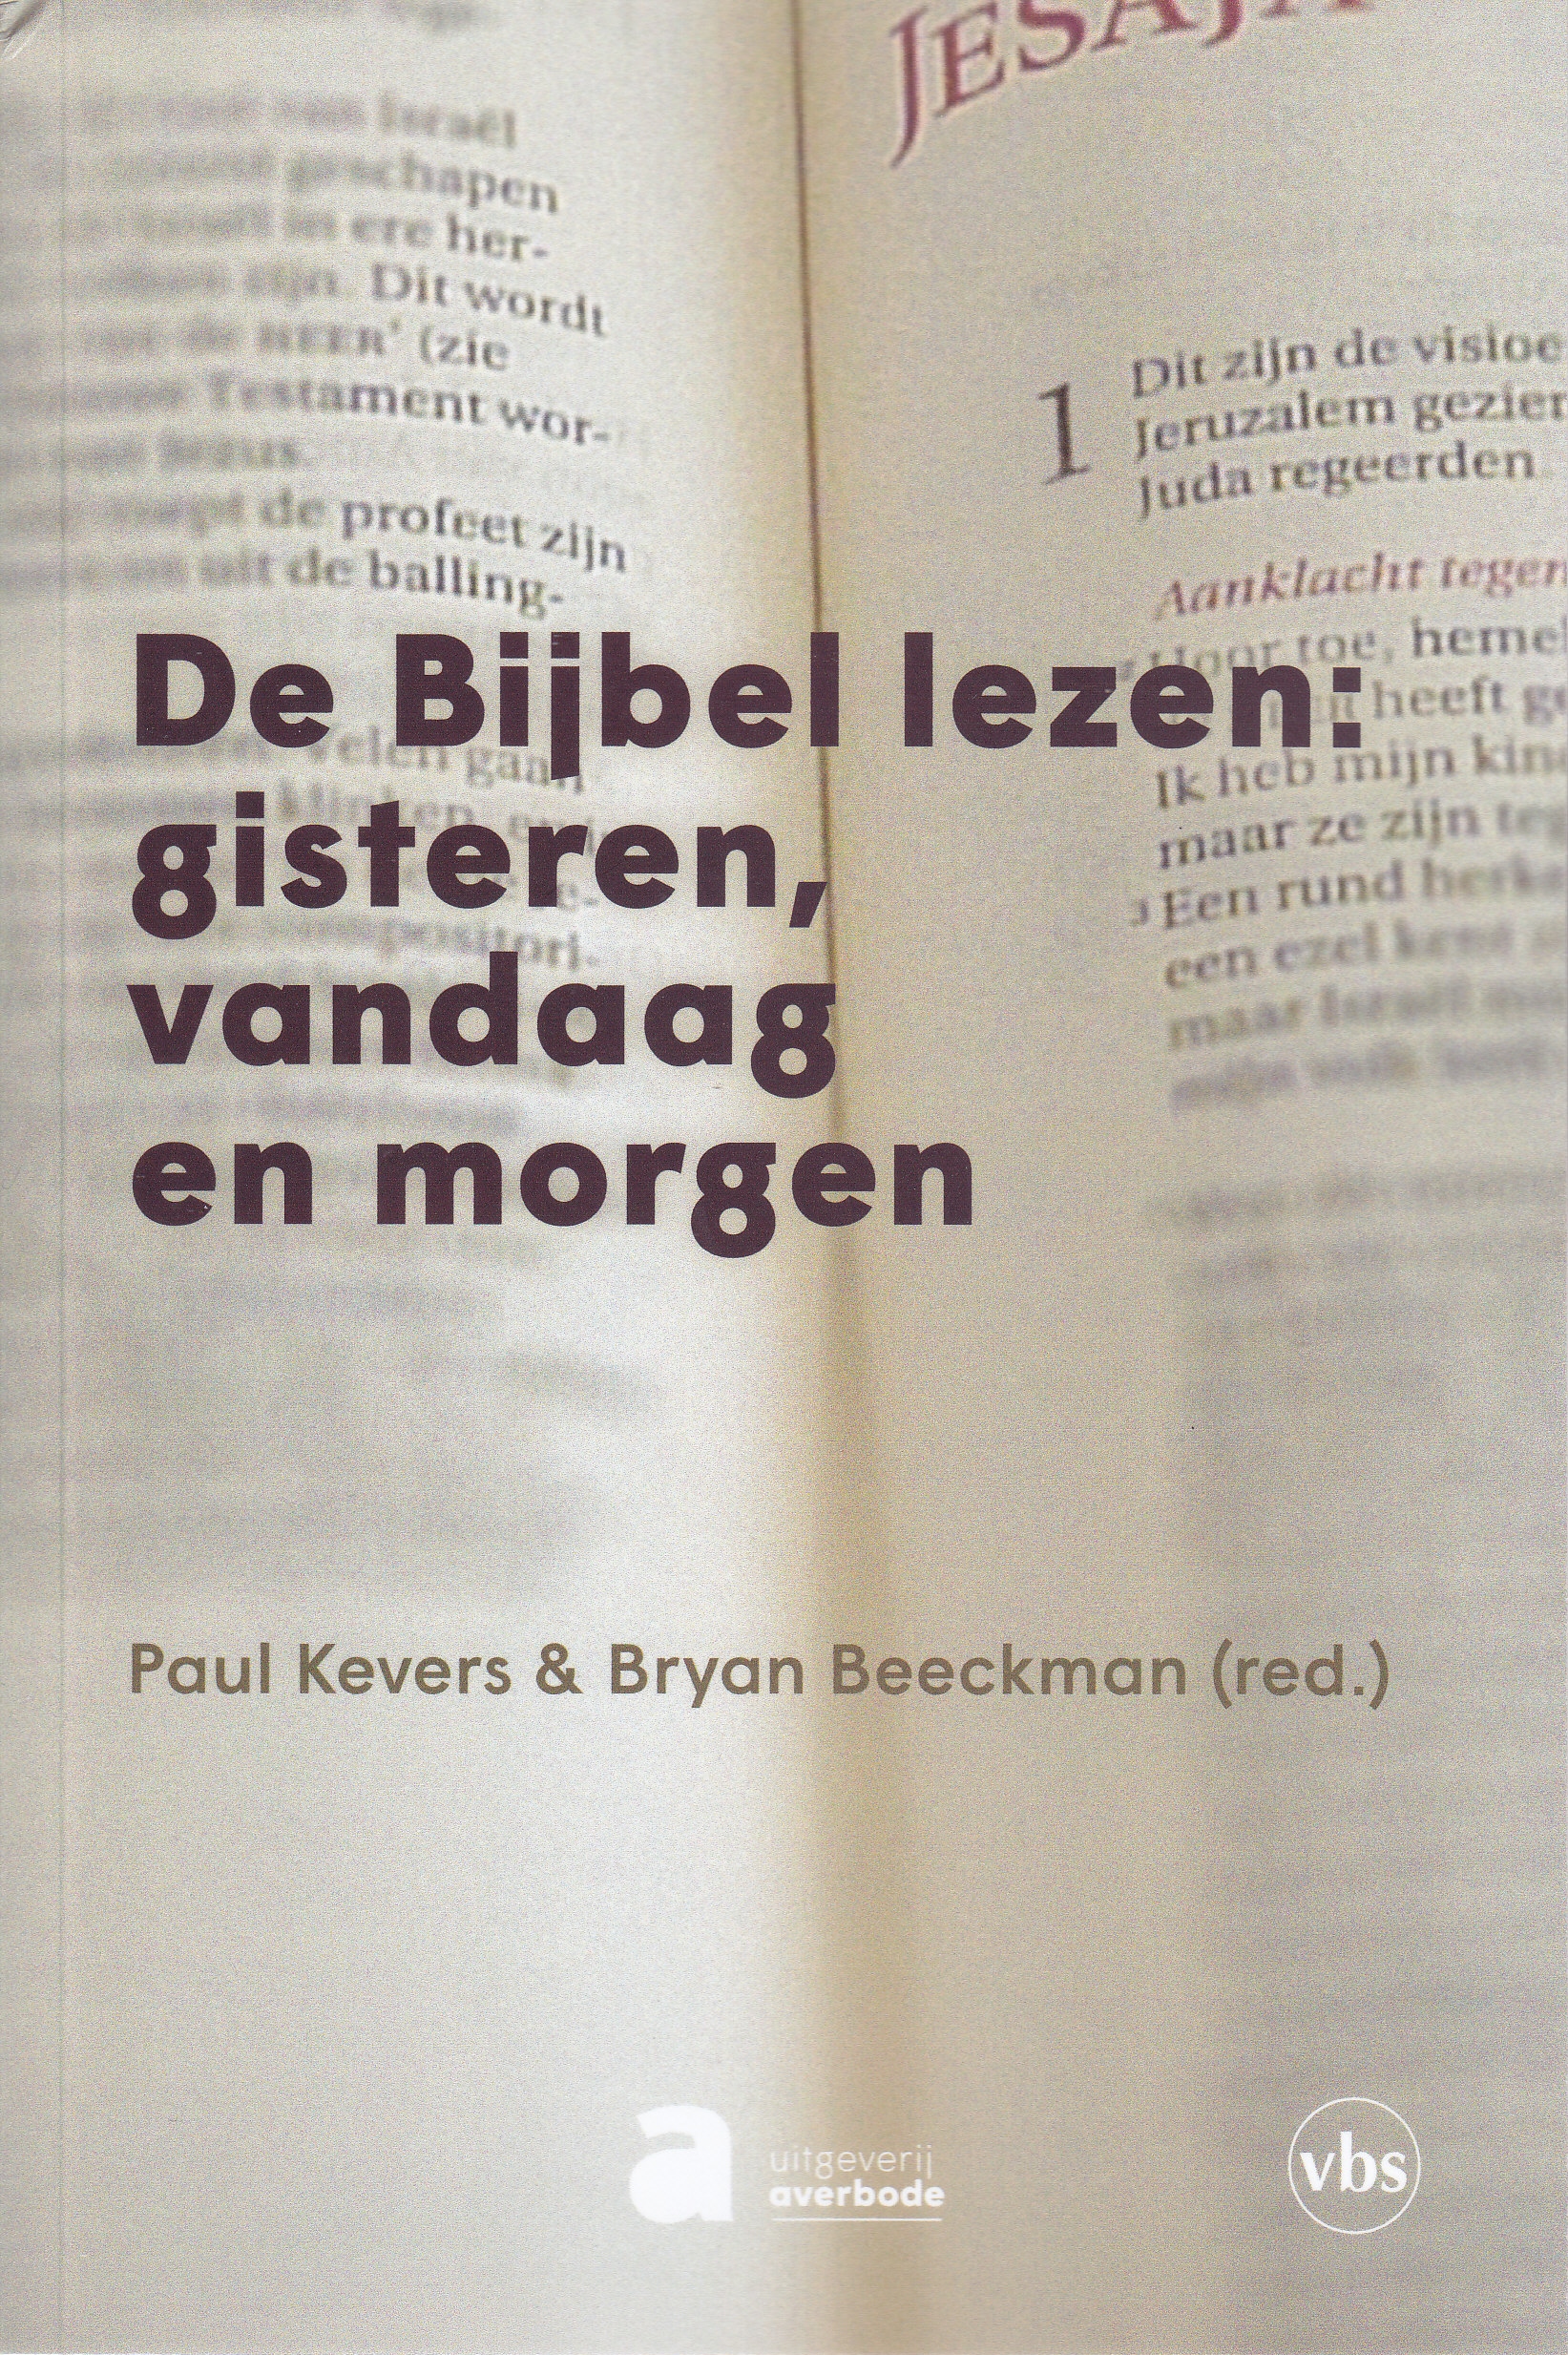 Paul Kevers en Bryan Beeckman (red.), De Bijbel lezen: gisteren, vandaag en morgen, Leuven: VBS-Averbode, 2020, 180 p., € 29